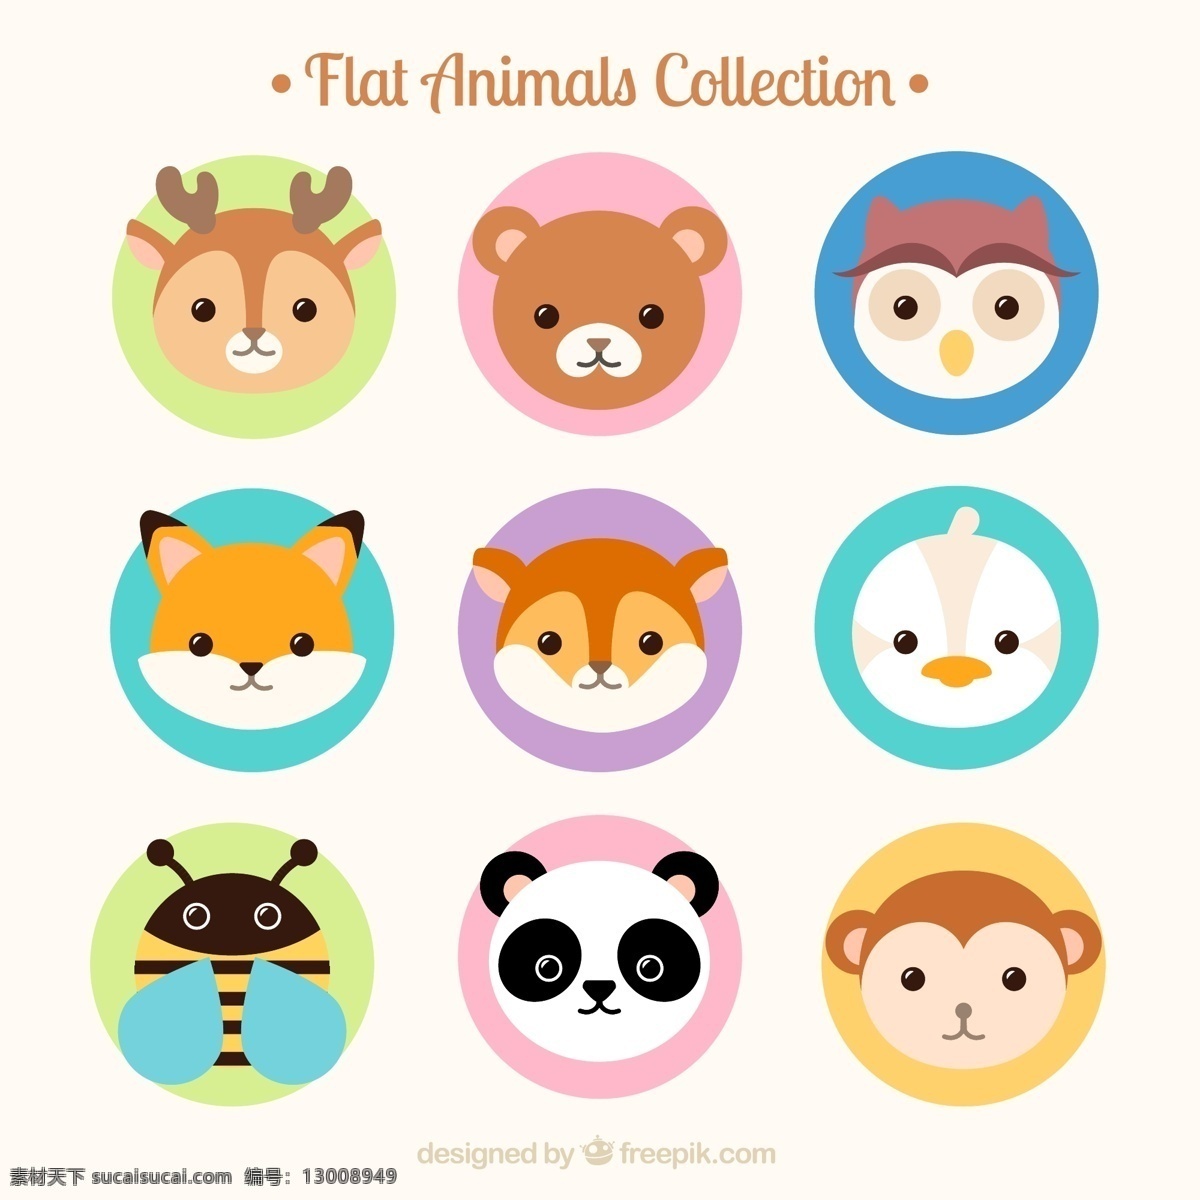 可爱 森林 动物 头像 矢量 矢量素材 卡通动物 创意卡通画 动物标签 熊猫 蜜蜂